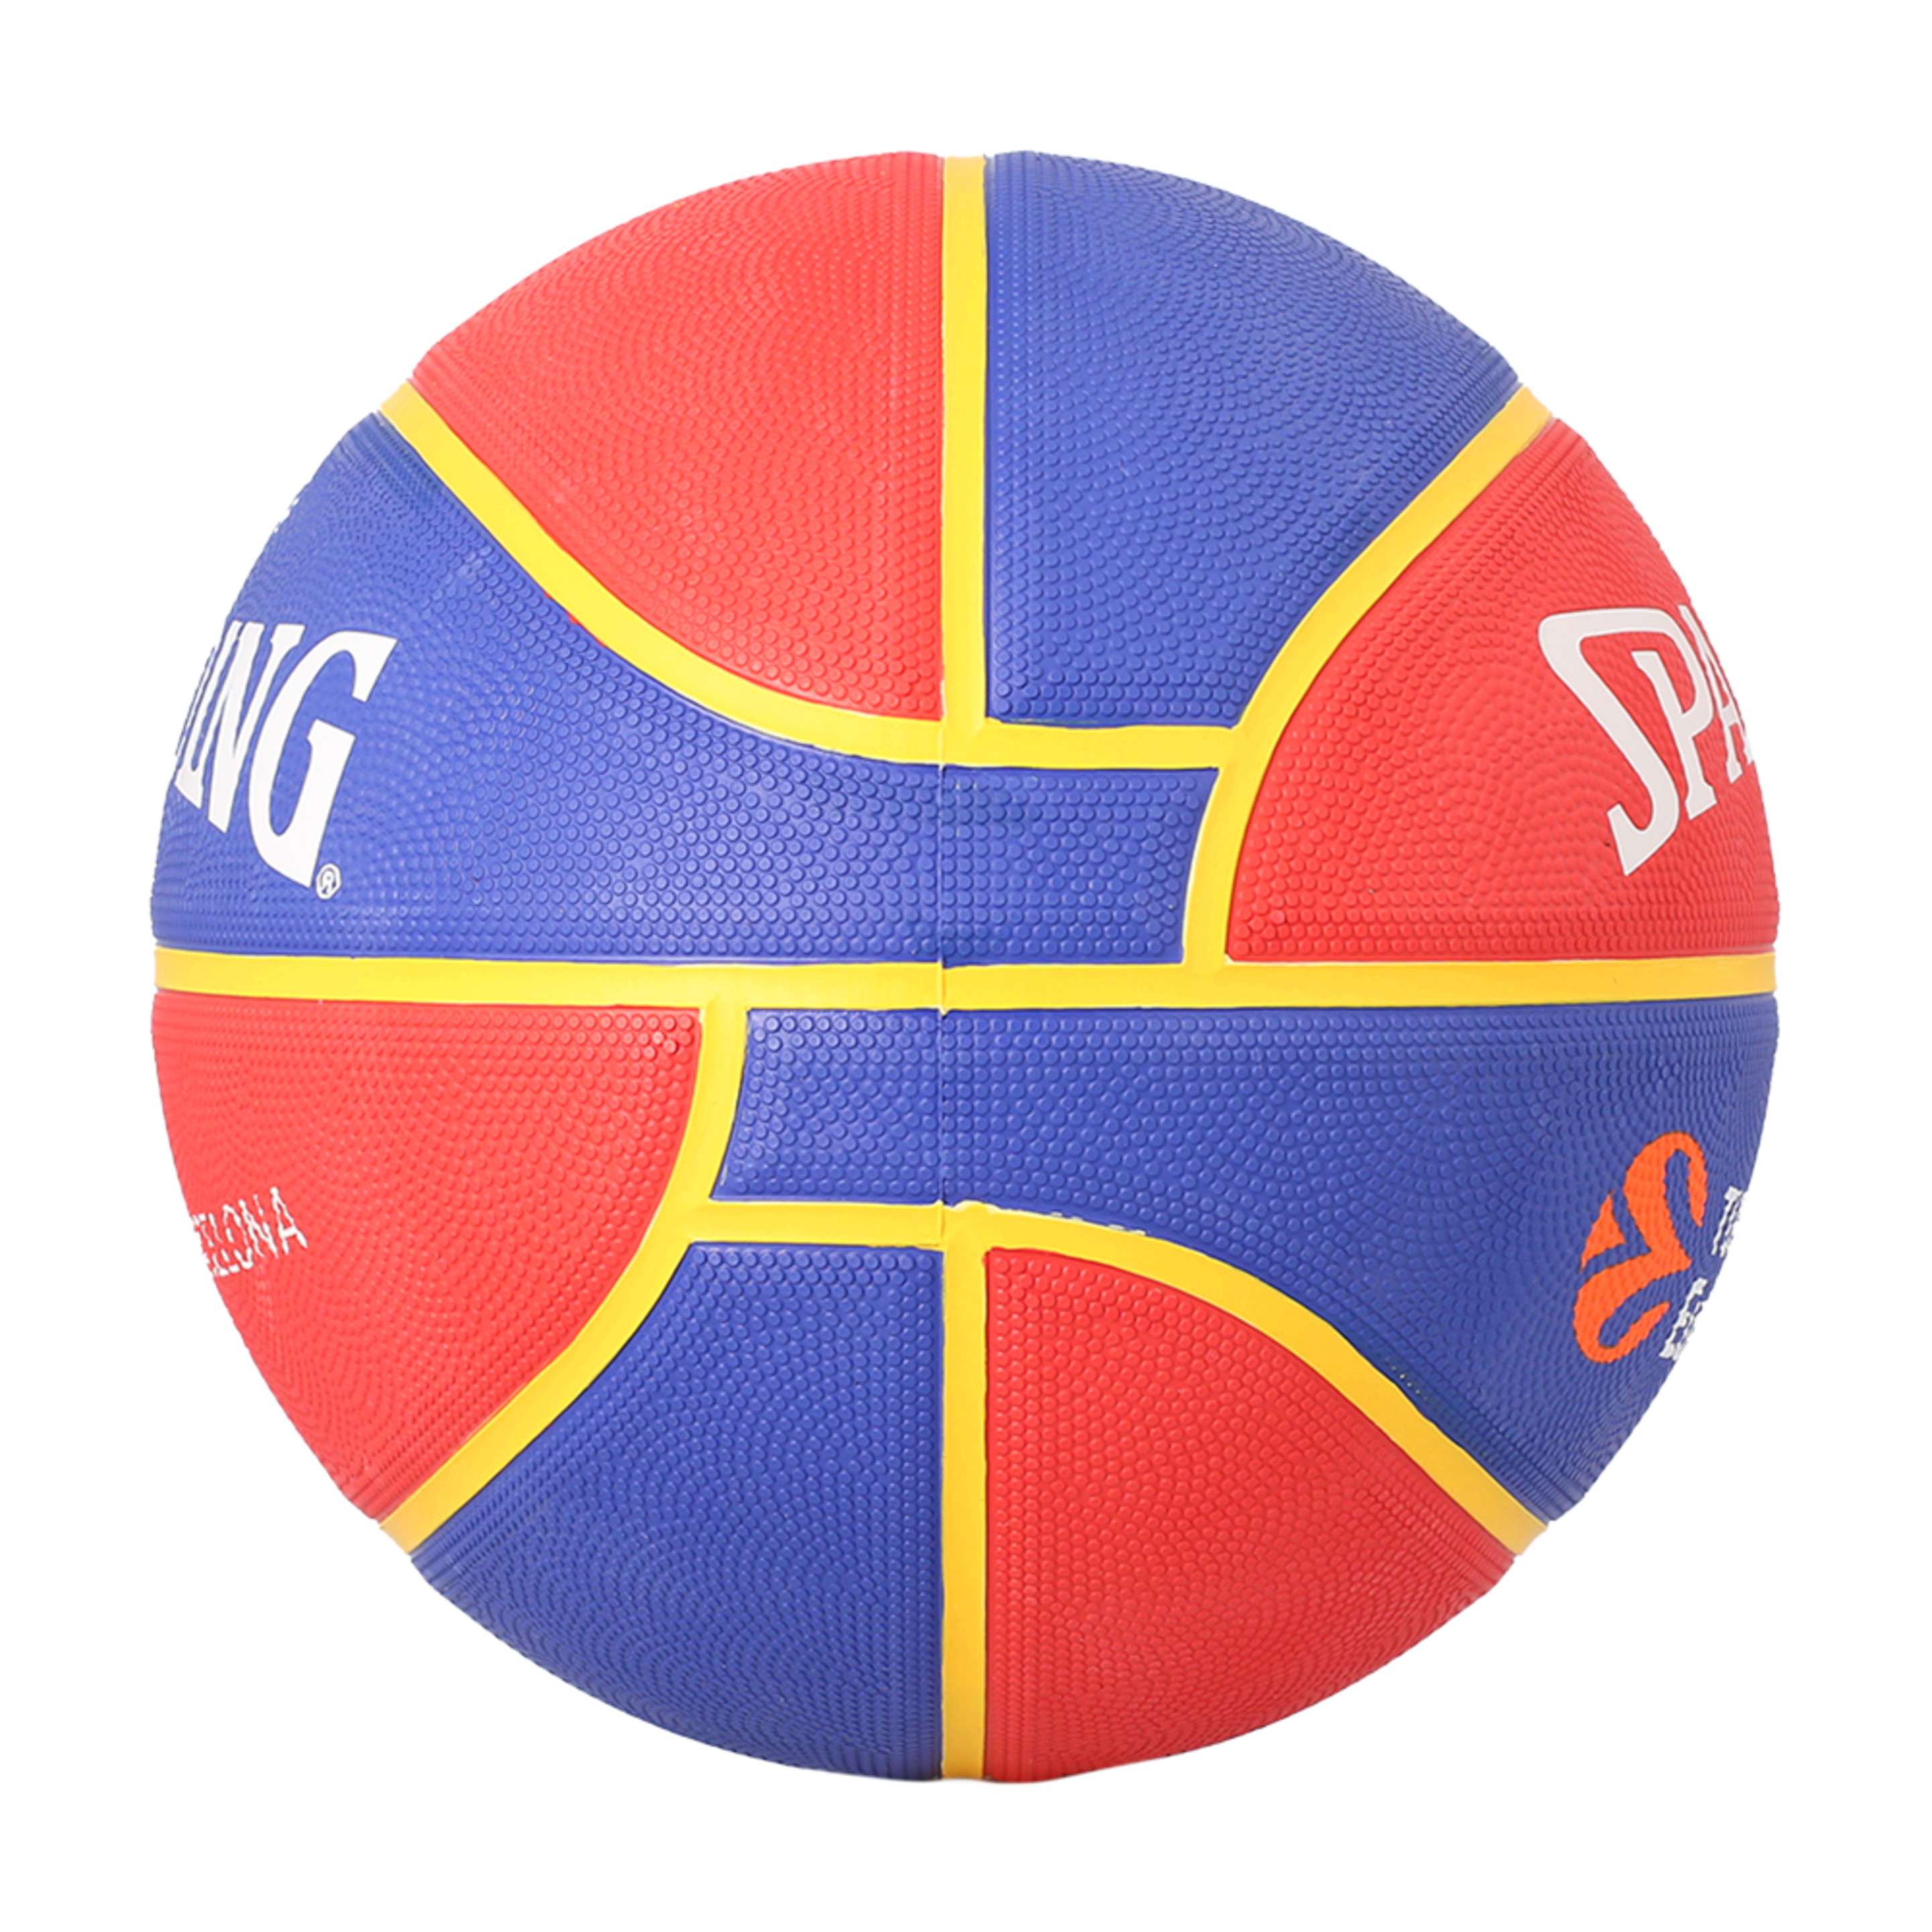 Balón De Baloncesto Spalding Fc Barcelona - Azul Claro/Rojo - Serie Euroleague  MKP